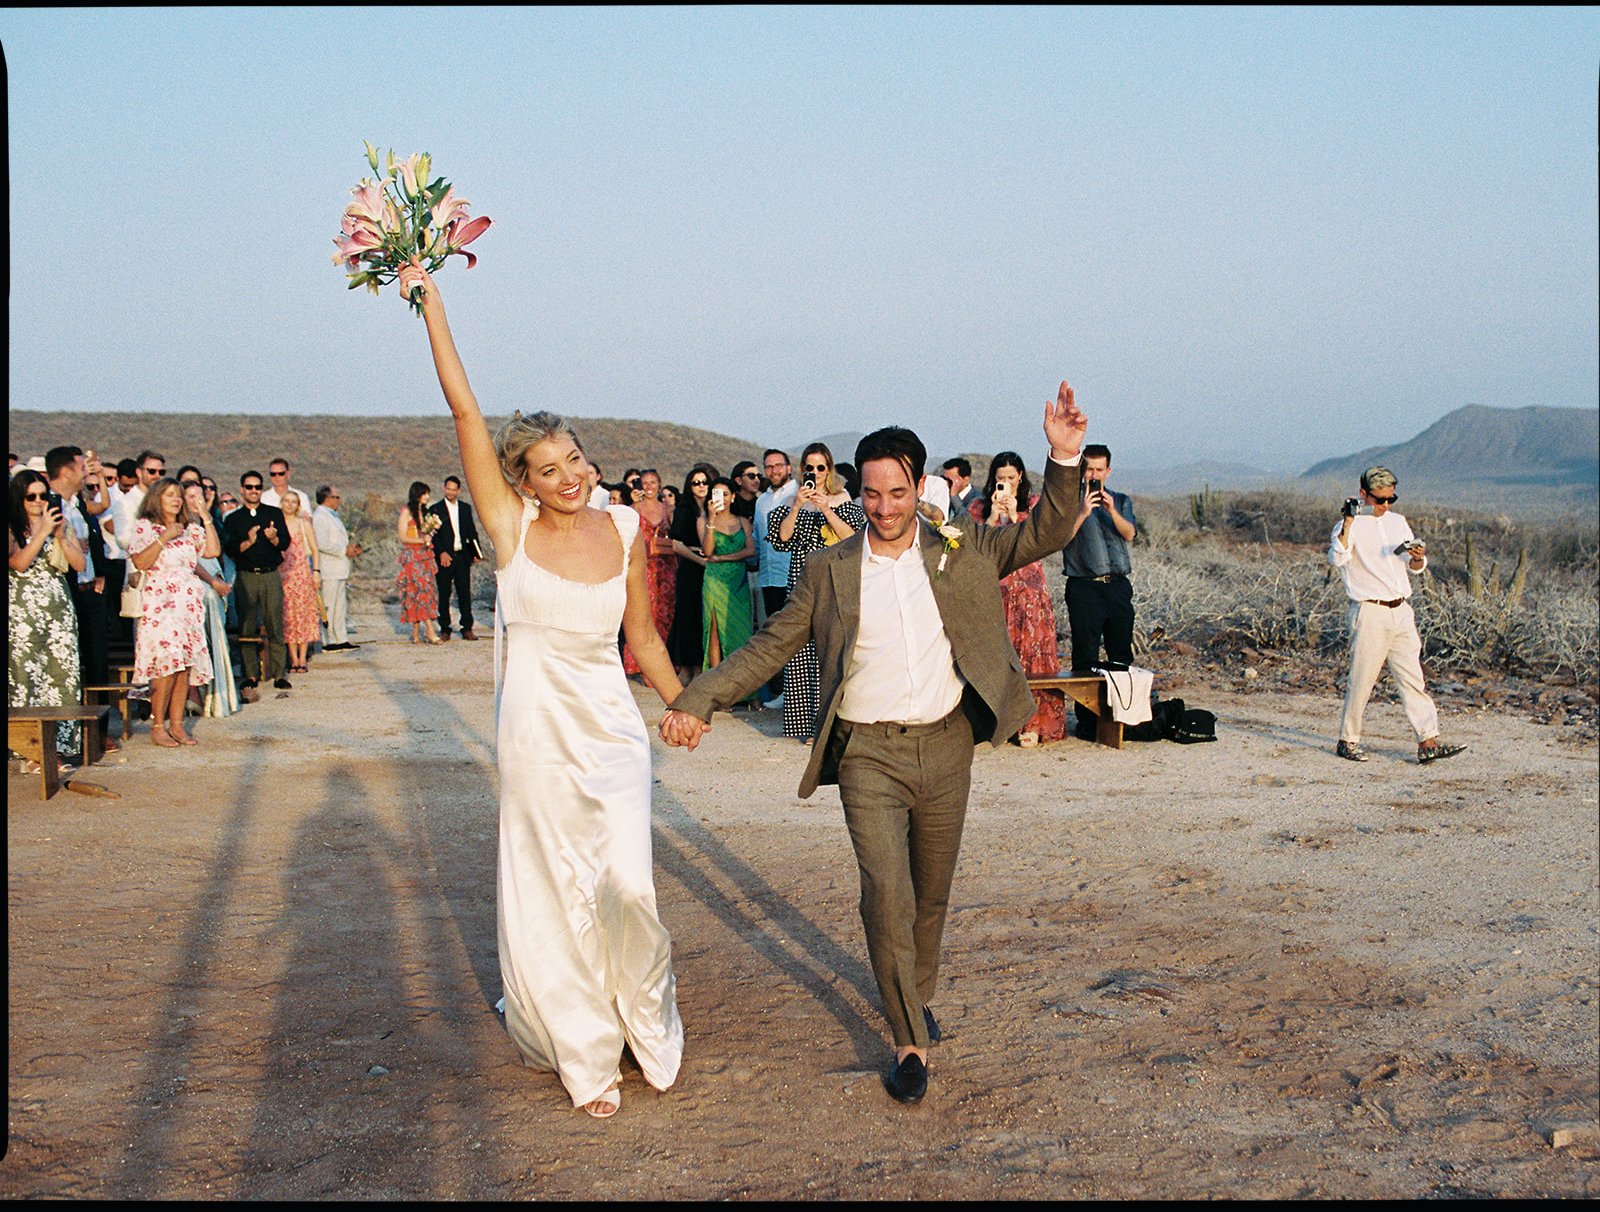 Best-Todos-Santos-Wedding-Photographer-Baja-El Mirador-La Bohemia-35mm-Film-Austin-Mexico-145.jpg